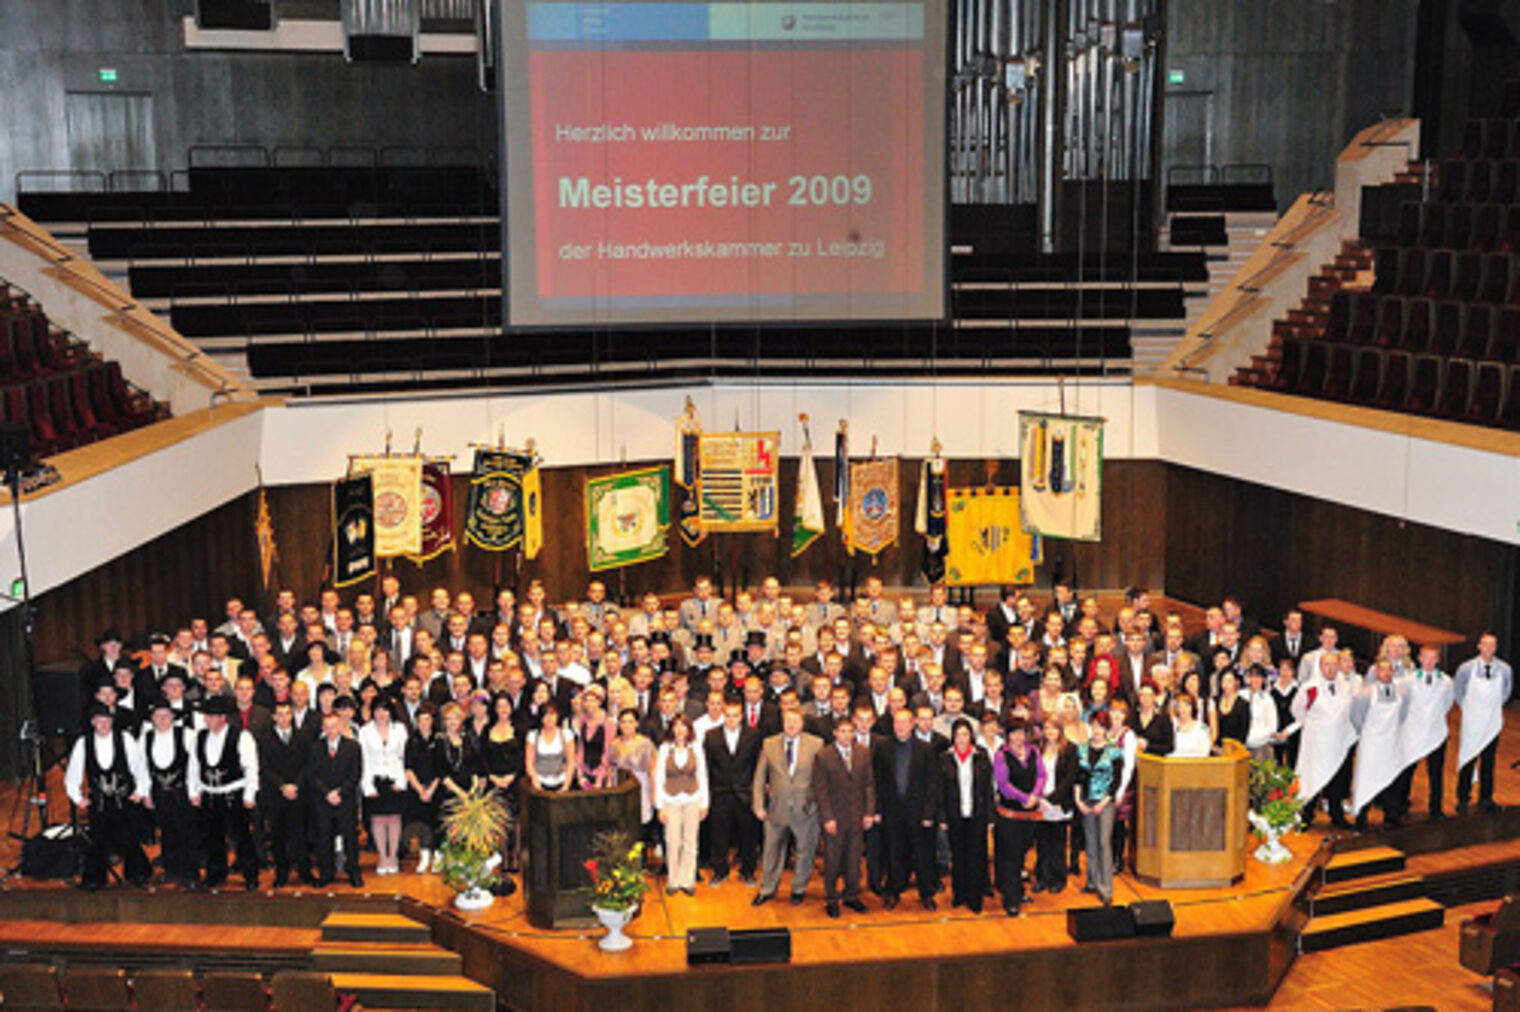 Meisterfeier der Handwerkskammer zu Leipzig 2009. Bild: Foto Geuther (www.foto-geuther.de)